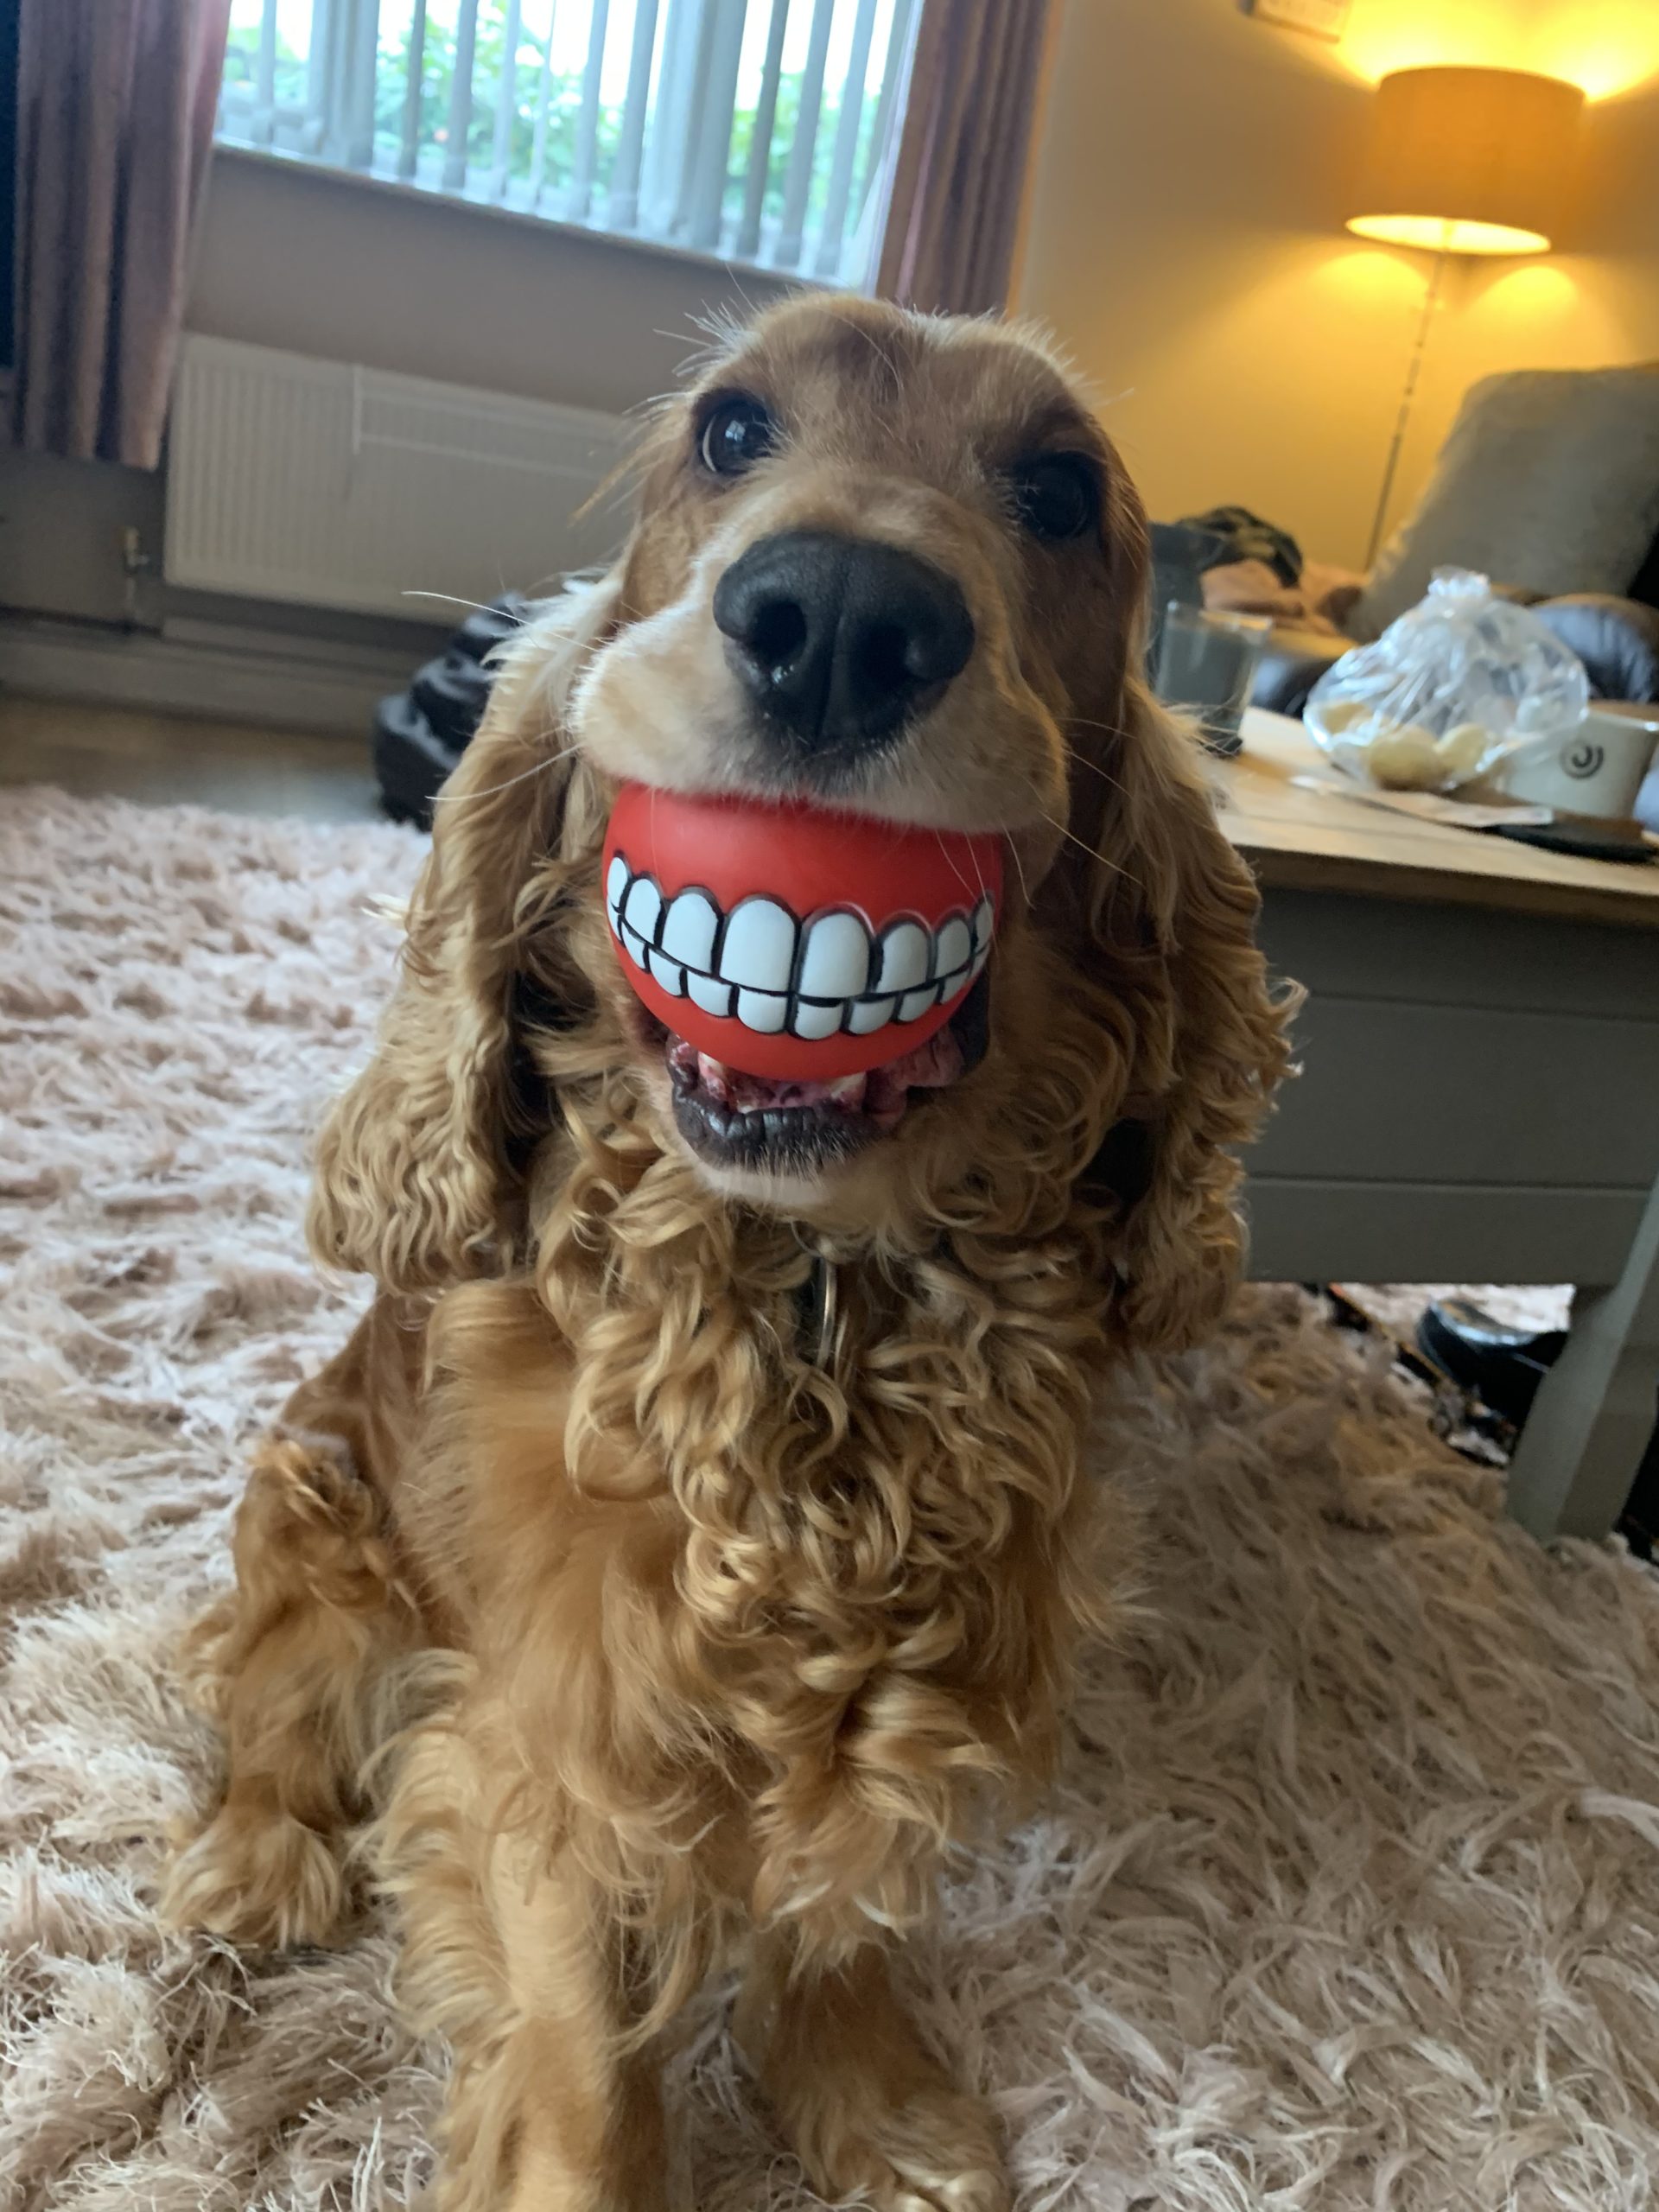 Fotografija 'Buddy's new teeth' fotografkinje Lianne Richards snimljena u Velikoj Britaniji. 